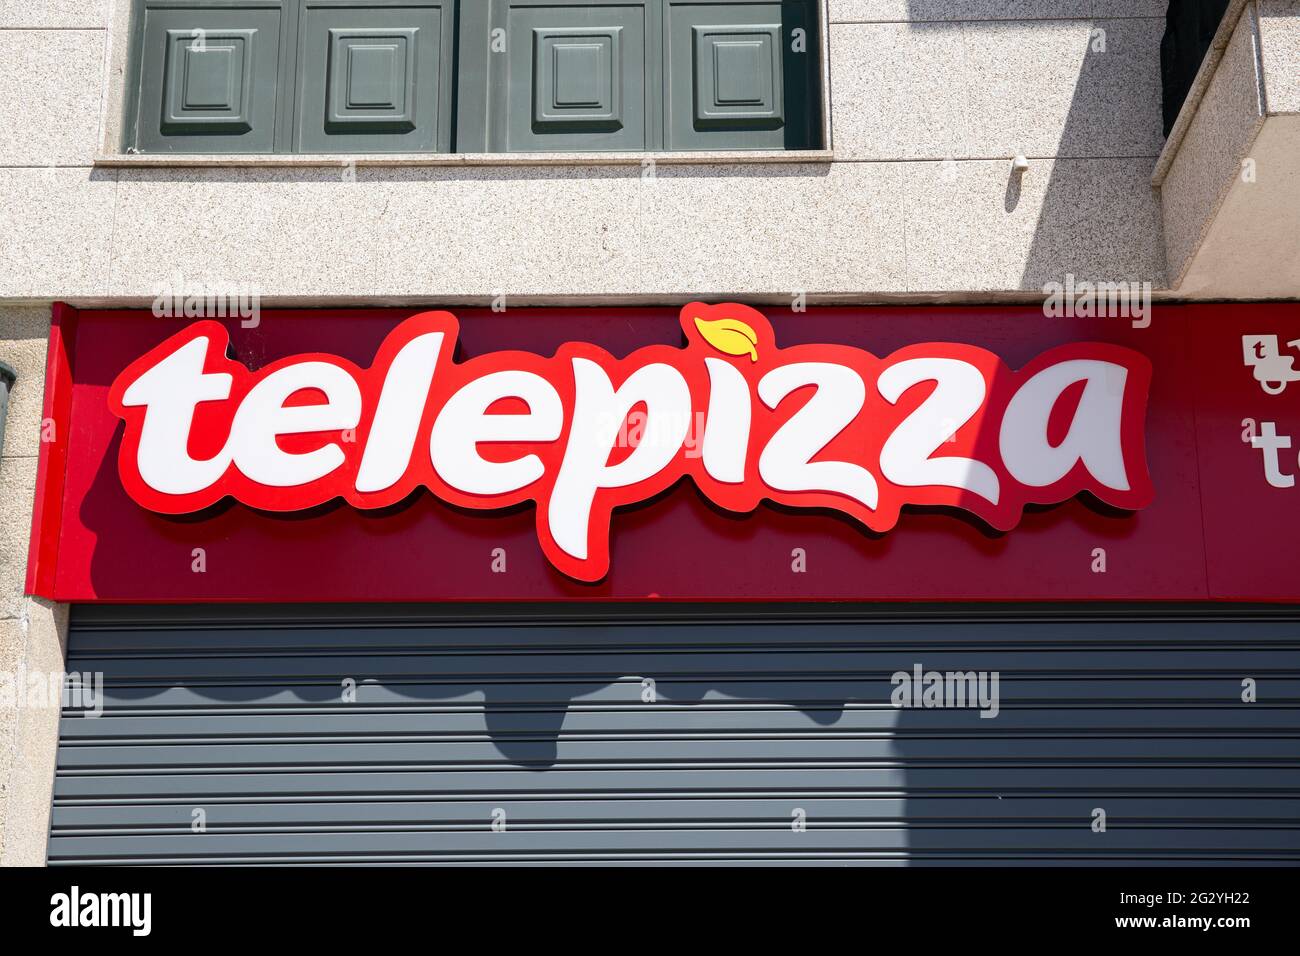 Galice, Espagne; 12 juin 2021: Panneau Telepizza sur le bâtiment de la façade. Chaîne de restaurants de pizza espagnole Banque D'Images